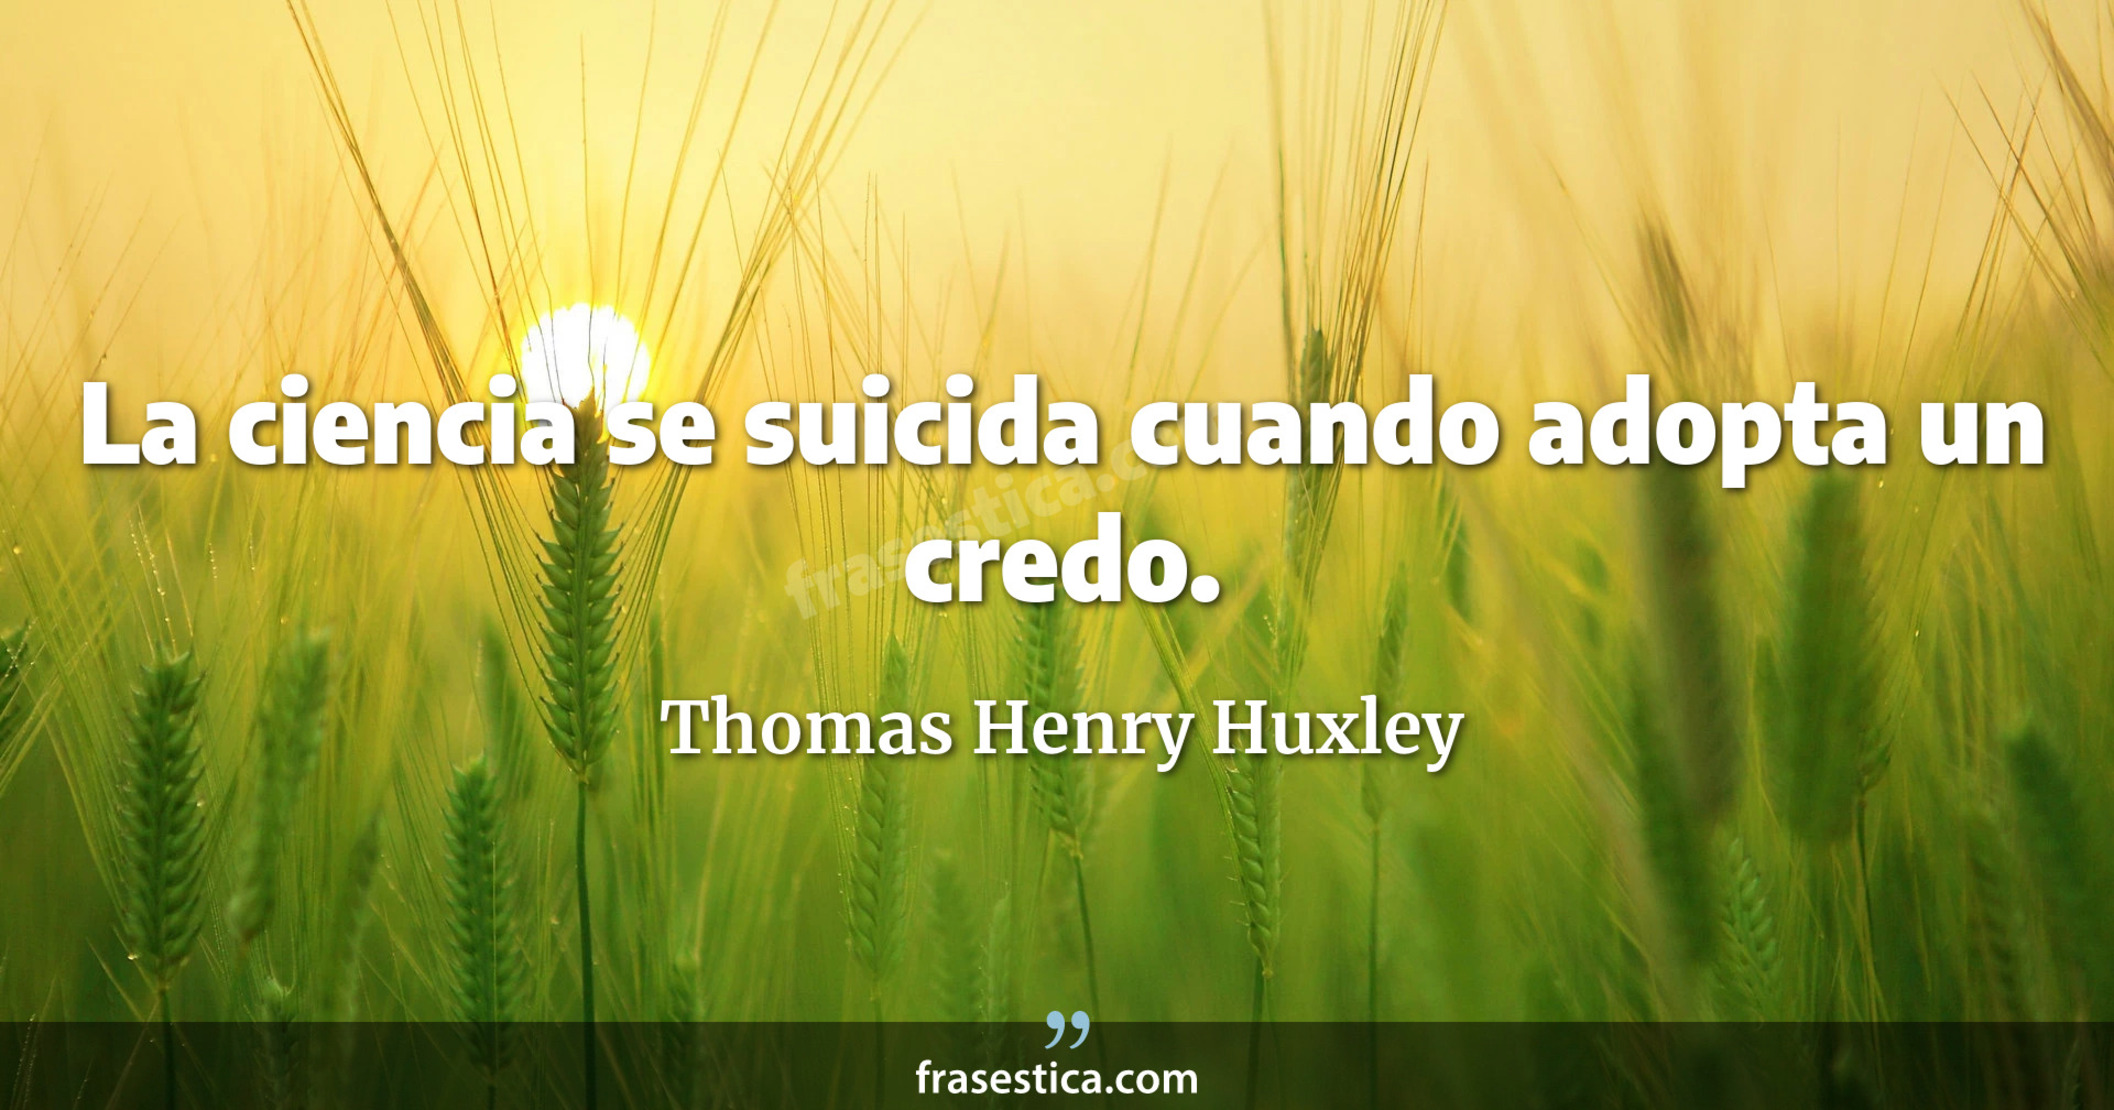 La ciencia se suicida cuando adopta un credo. - Thomas Henry Huxley